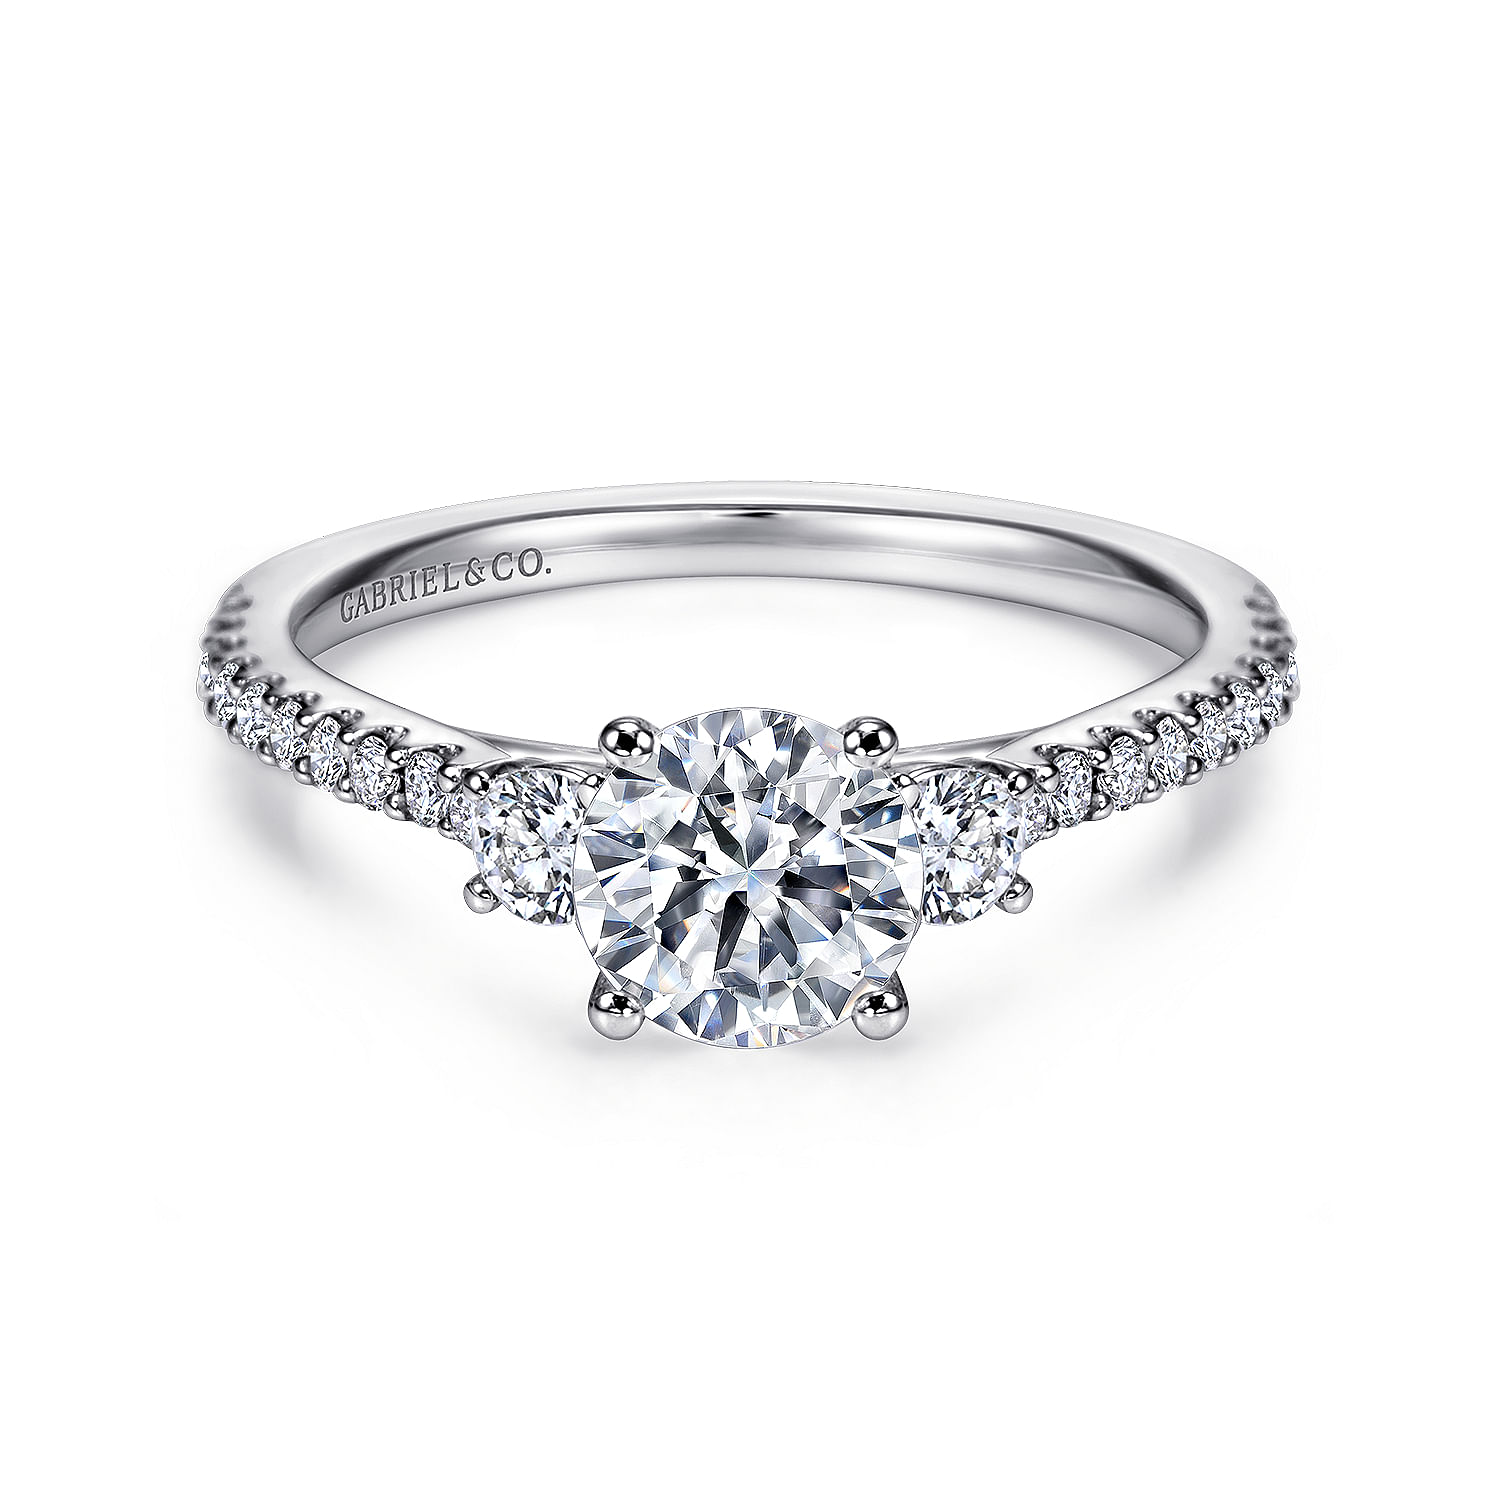 Cherize---14K-White-Gold-Round-Three-Stone-Diamond-Engagement-Ring1